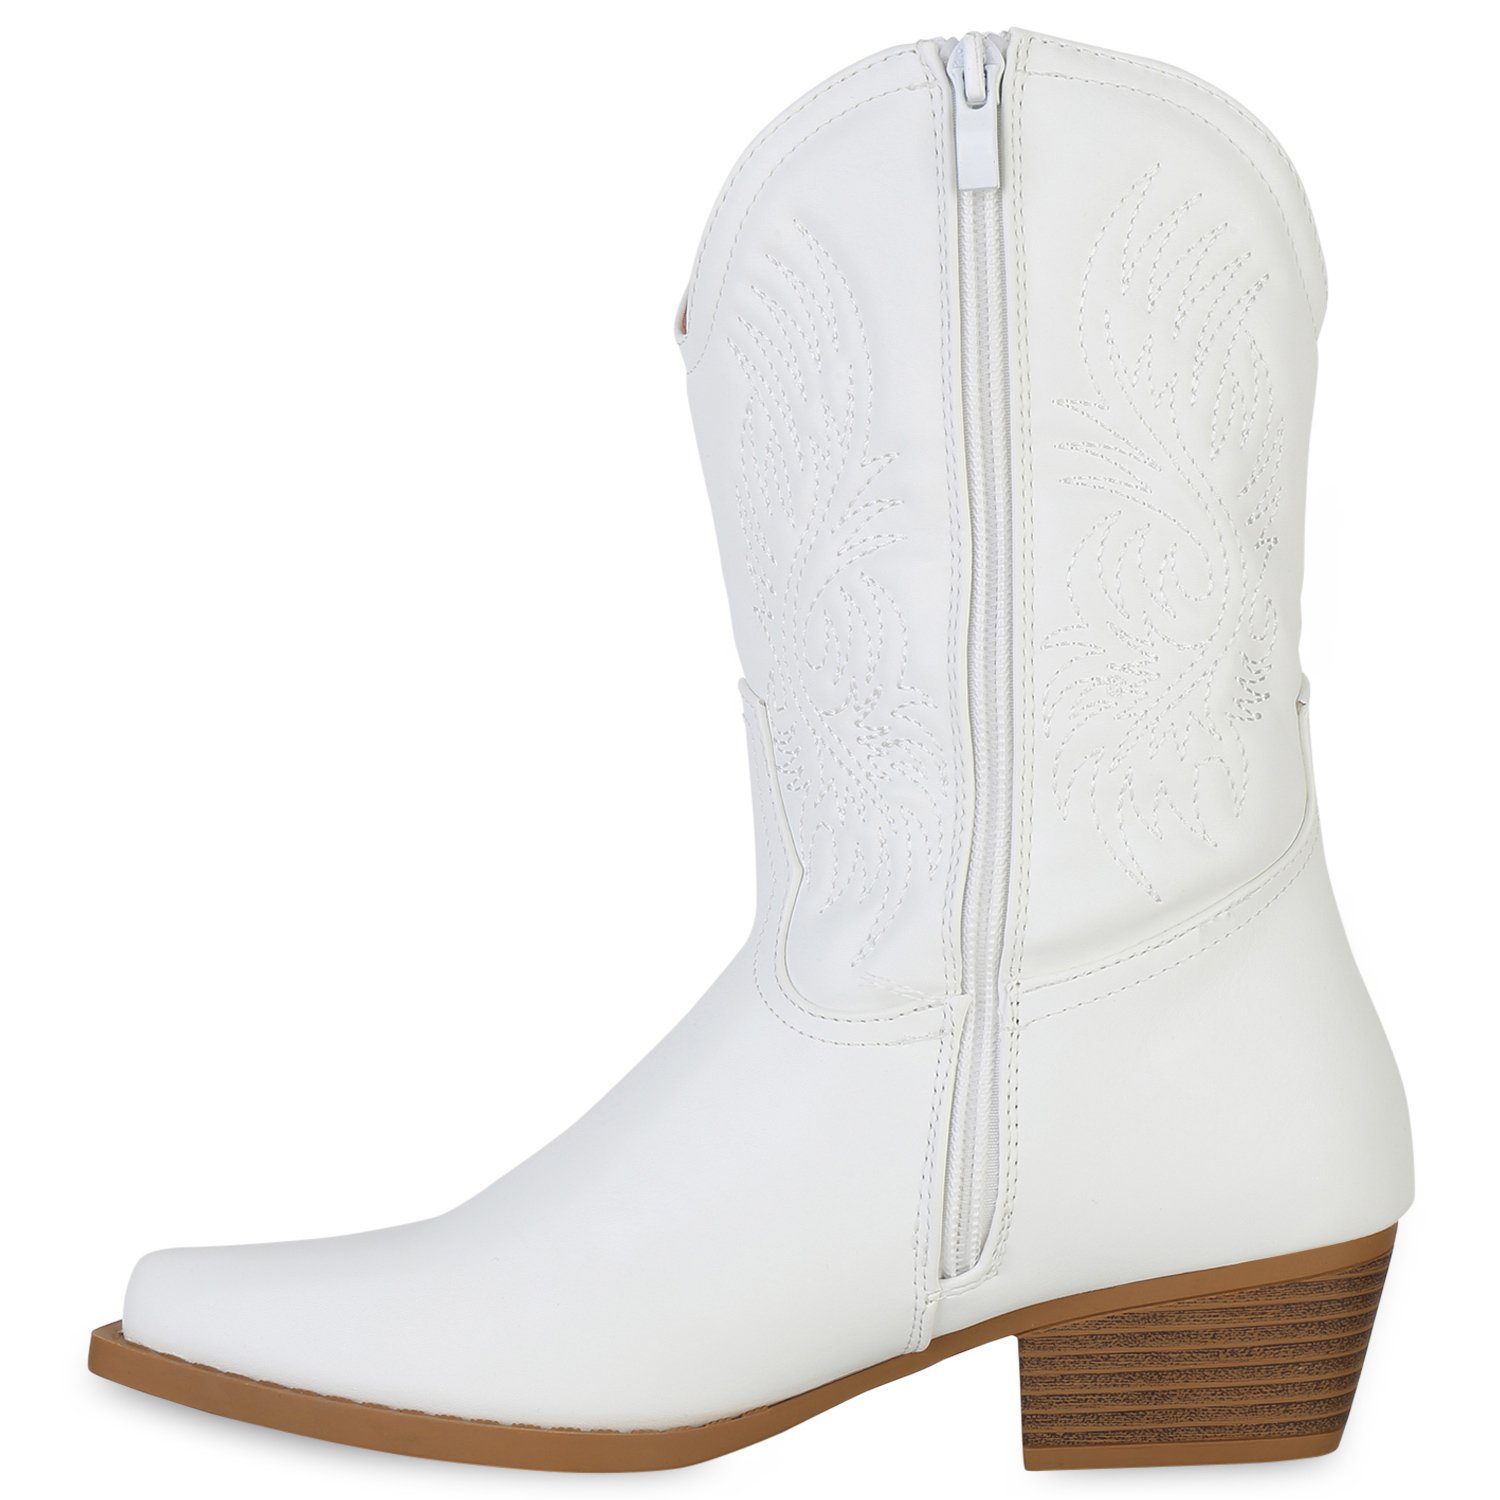 VAN Cowboy Boots 840254 Weiss HILL Schuhe